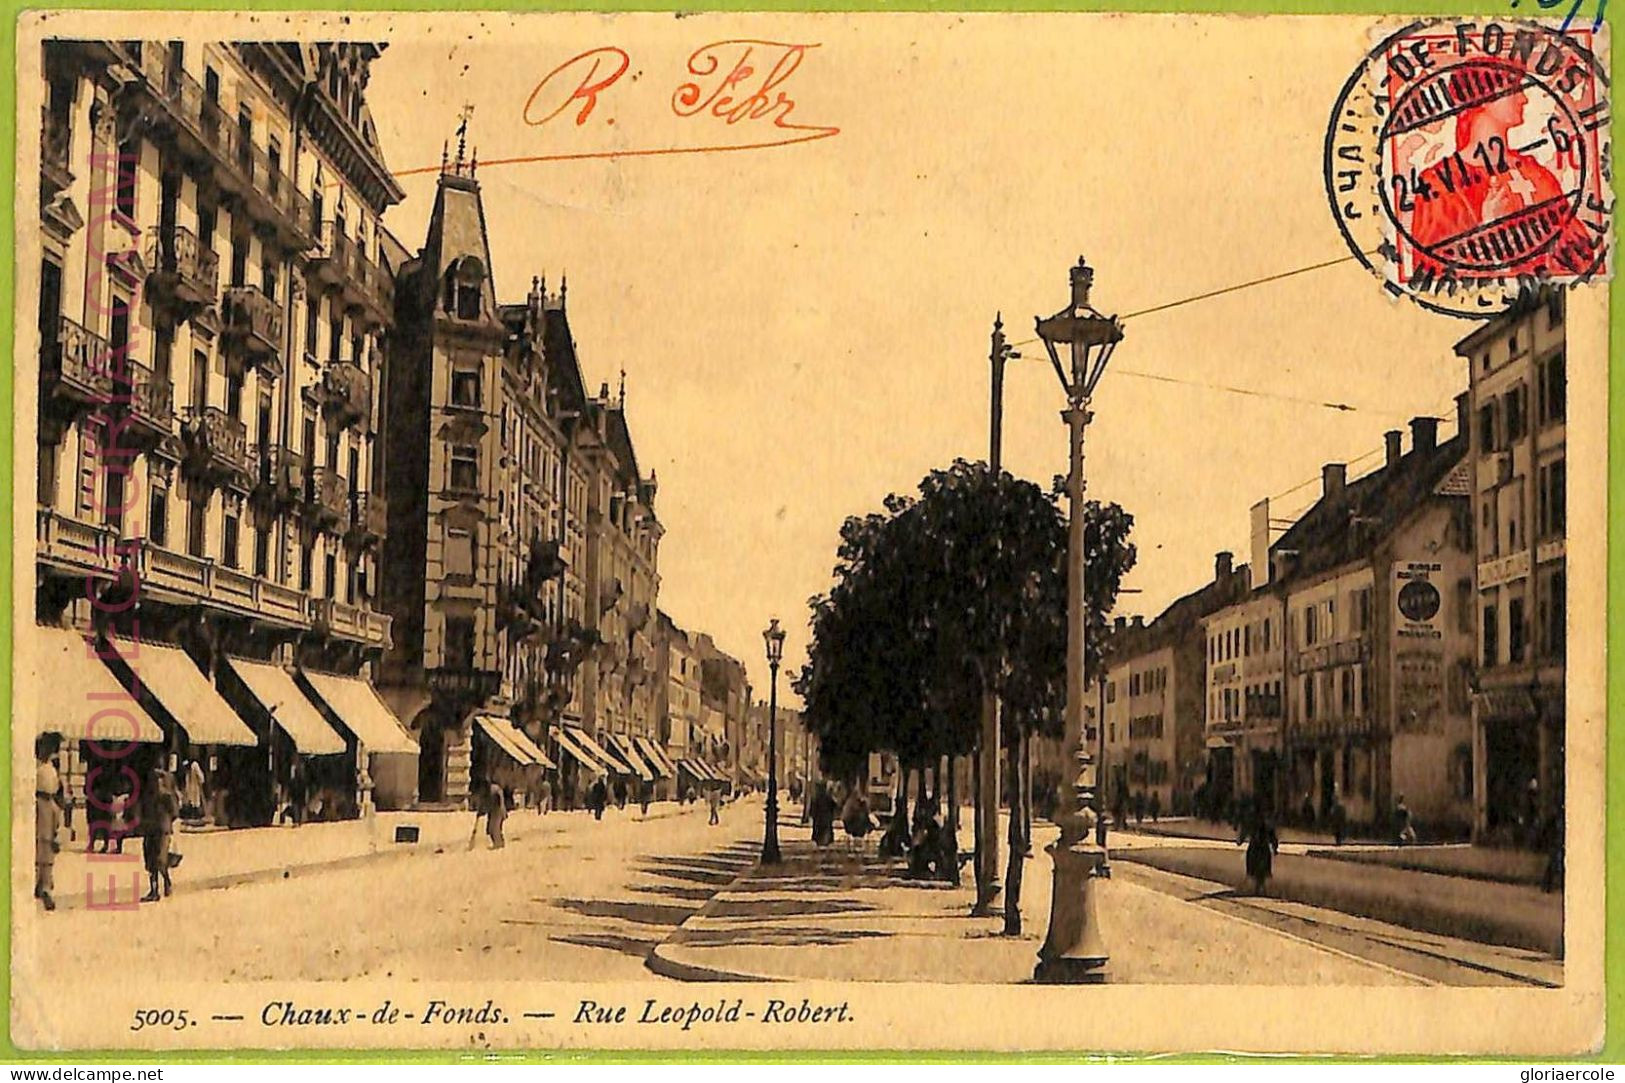 Ad4128 - SWITZERLAND - Ansichtskarten VINTAGE POSTCARD - Le Chaux-de-Fonds- 1912 - La Chaux